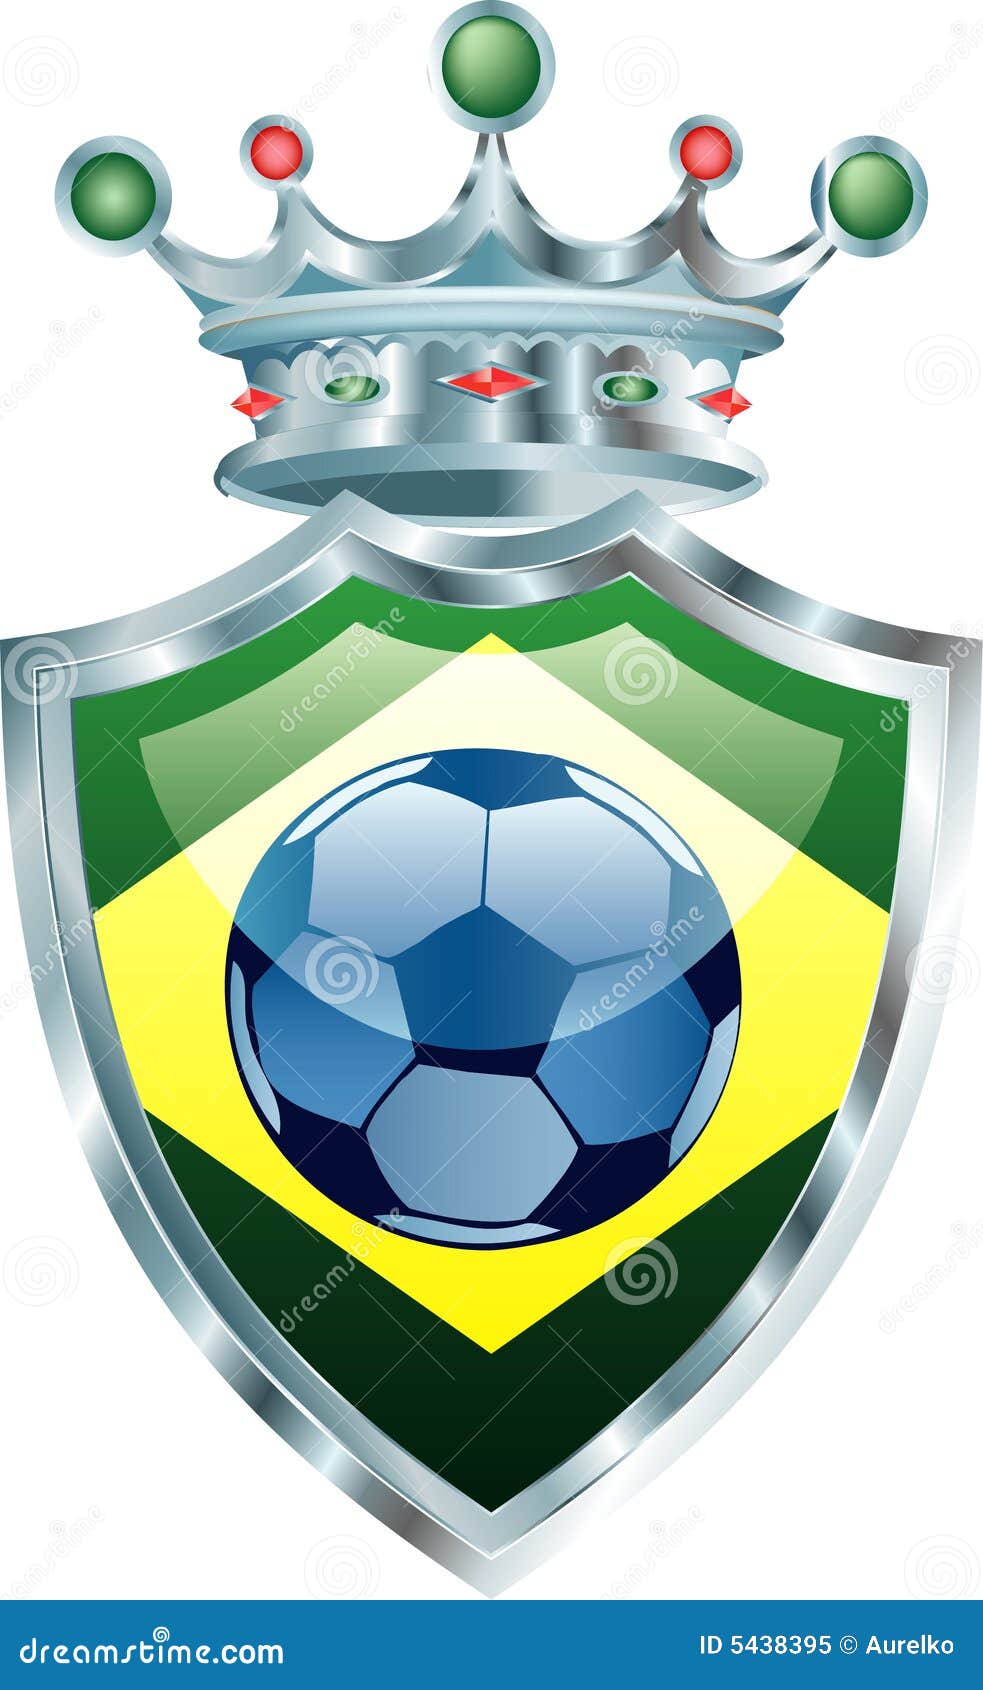 κορώνα της Βραζιλίας. διάνυσμα ποδοσφαίρου απεικόνισης σημαιών της Βραζιλίας σφαιρών